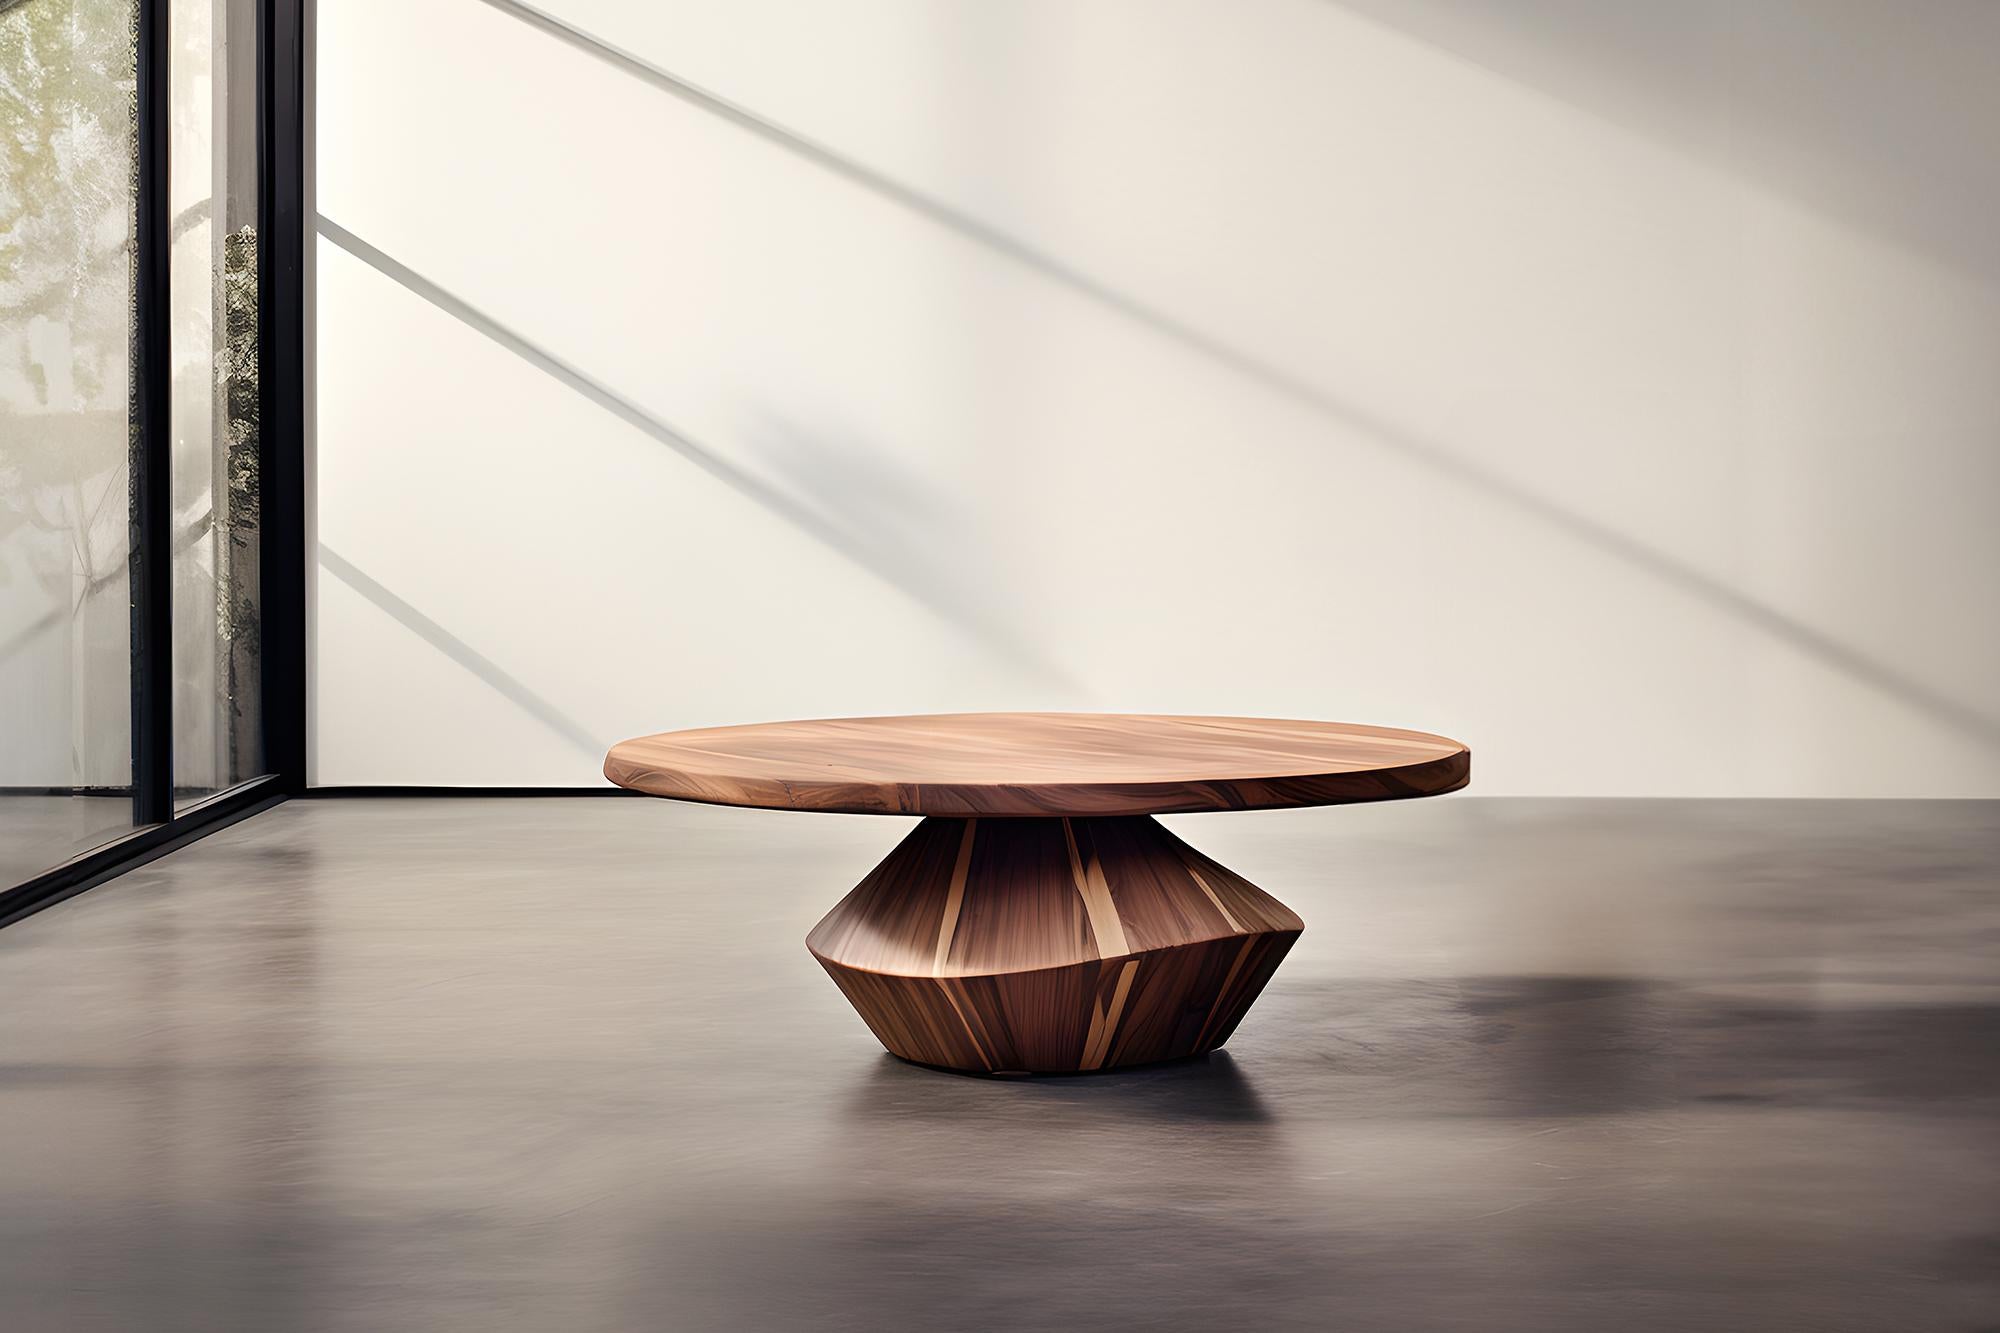 Skulpturaler Couchtisch aus Massivholz, Center Table Solace S43 von Joel Escalona


Die Tischserie Solace, entworfen von Joel Escalona, ist eine Möbelkollektion, die dank ihrer sinnlichen, dichten und unregelmäßigen Formen Ausgewogenheit und Präsenz